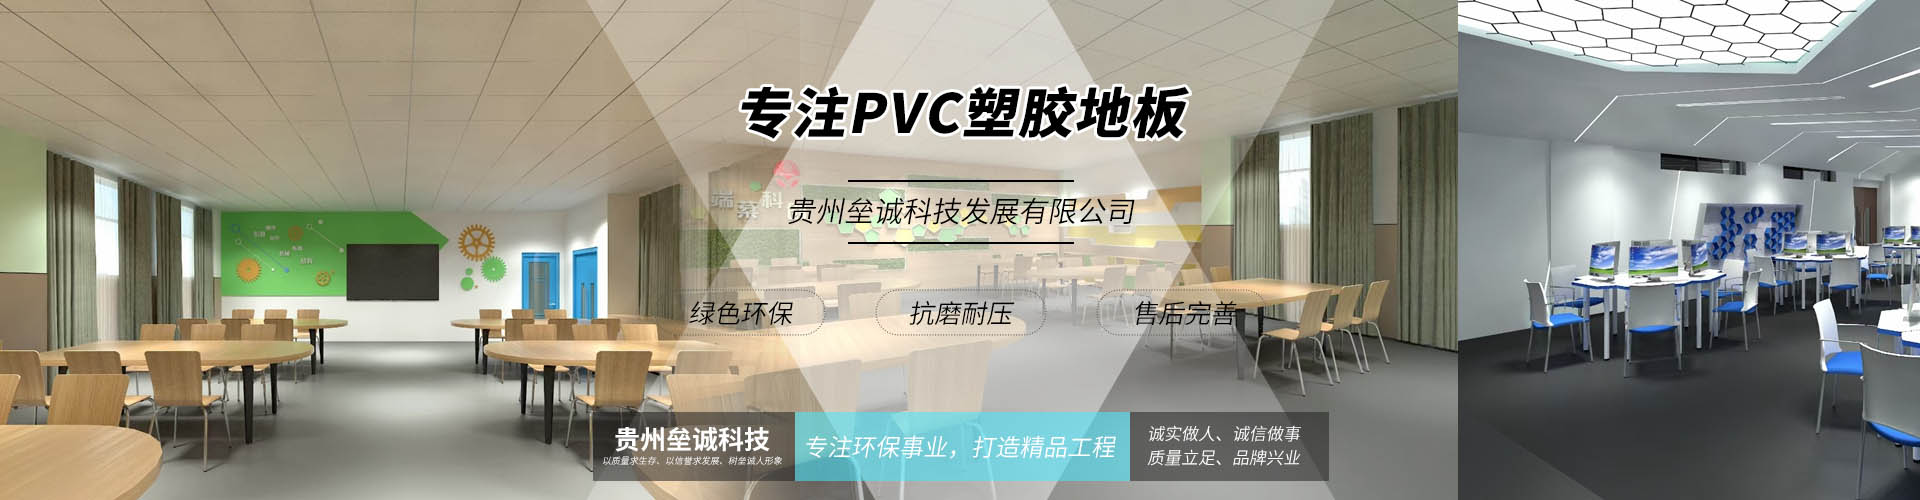 贵州垒诚PVC地板科技发展有限公司【官网】